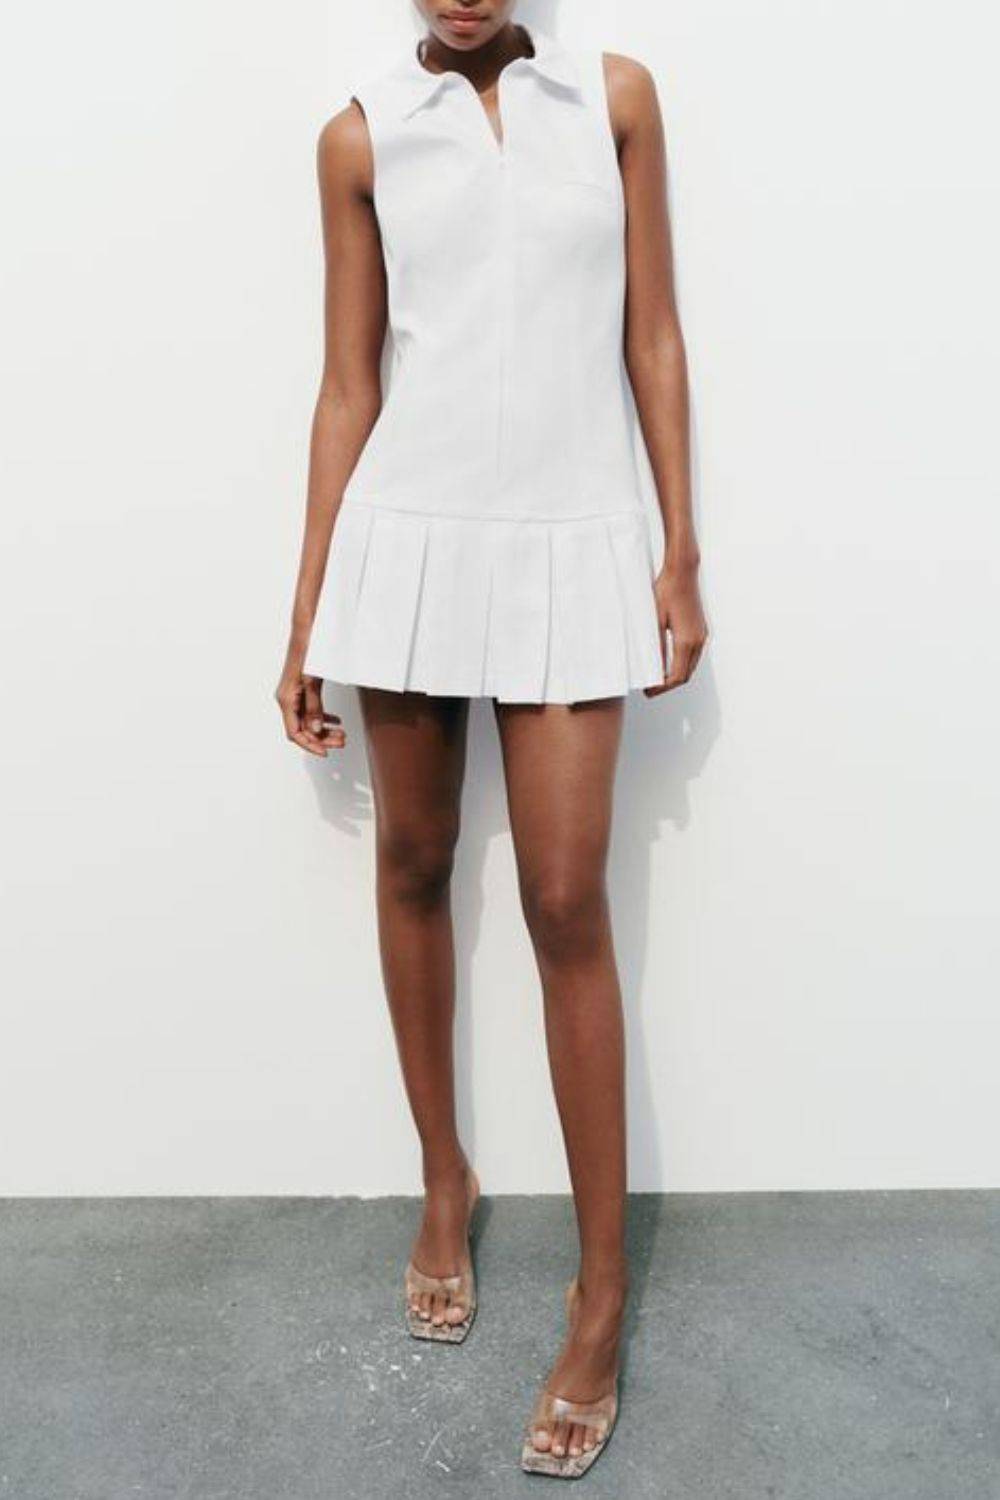 Sukienka wizytowa biała, Zara, 129 zł (Fot. materiały prasowe)